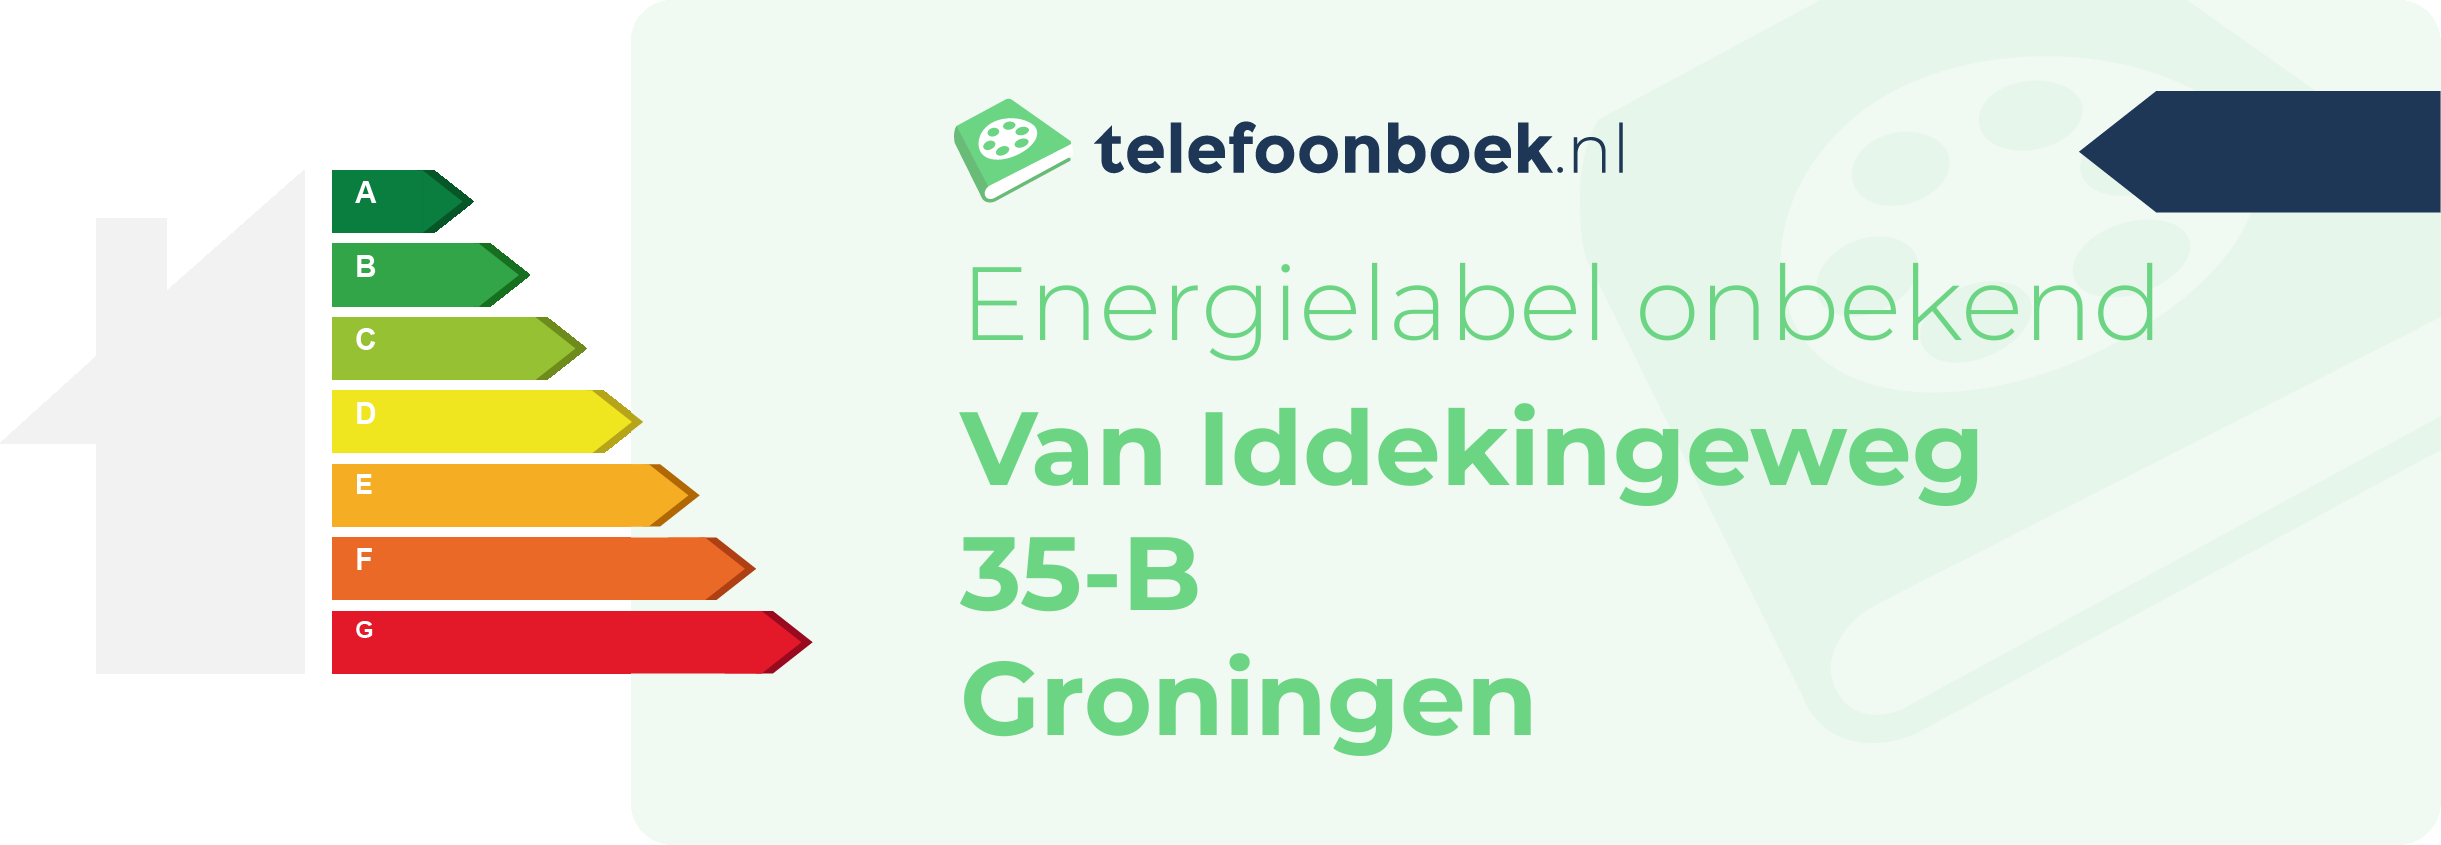 Energielabel Van Iddekingeweg 35-B Groningen